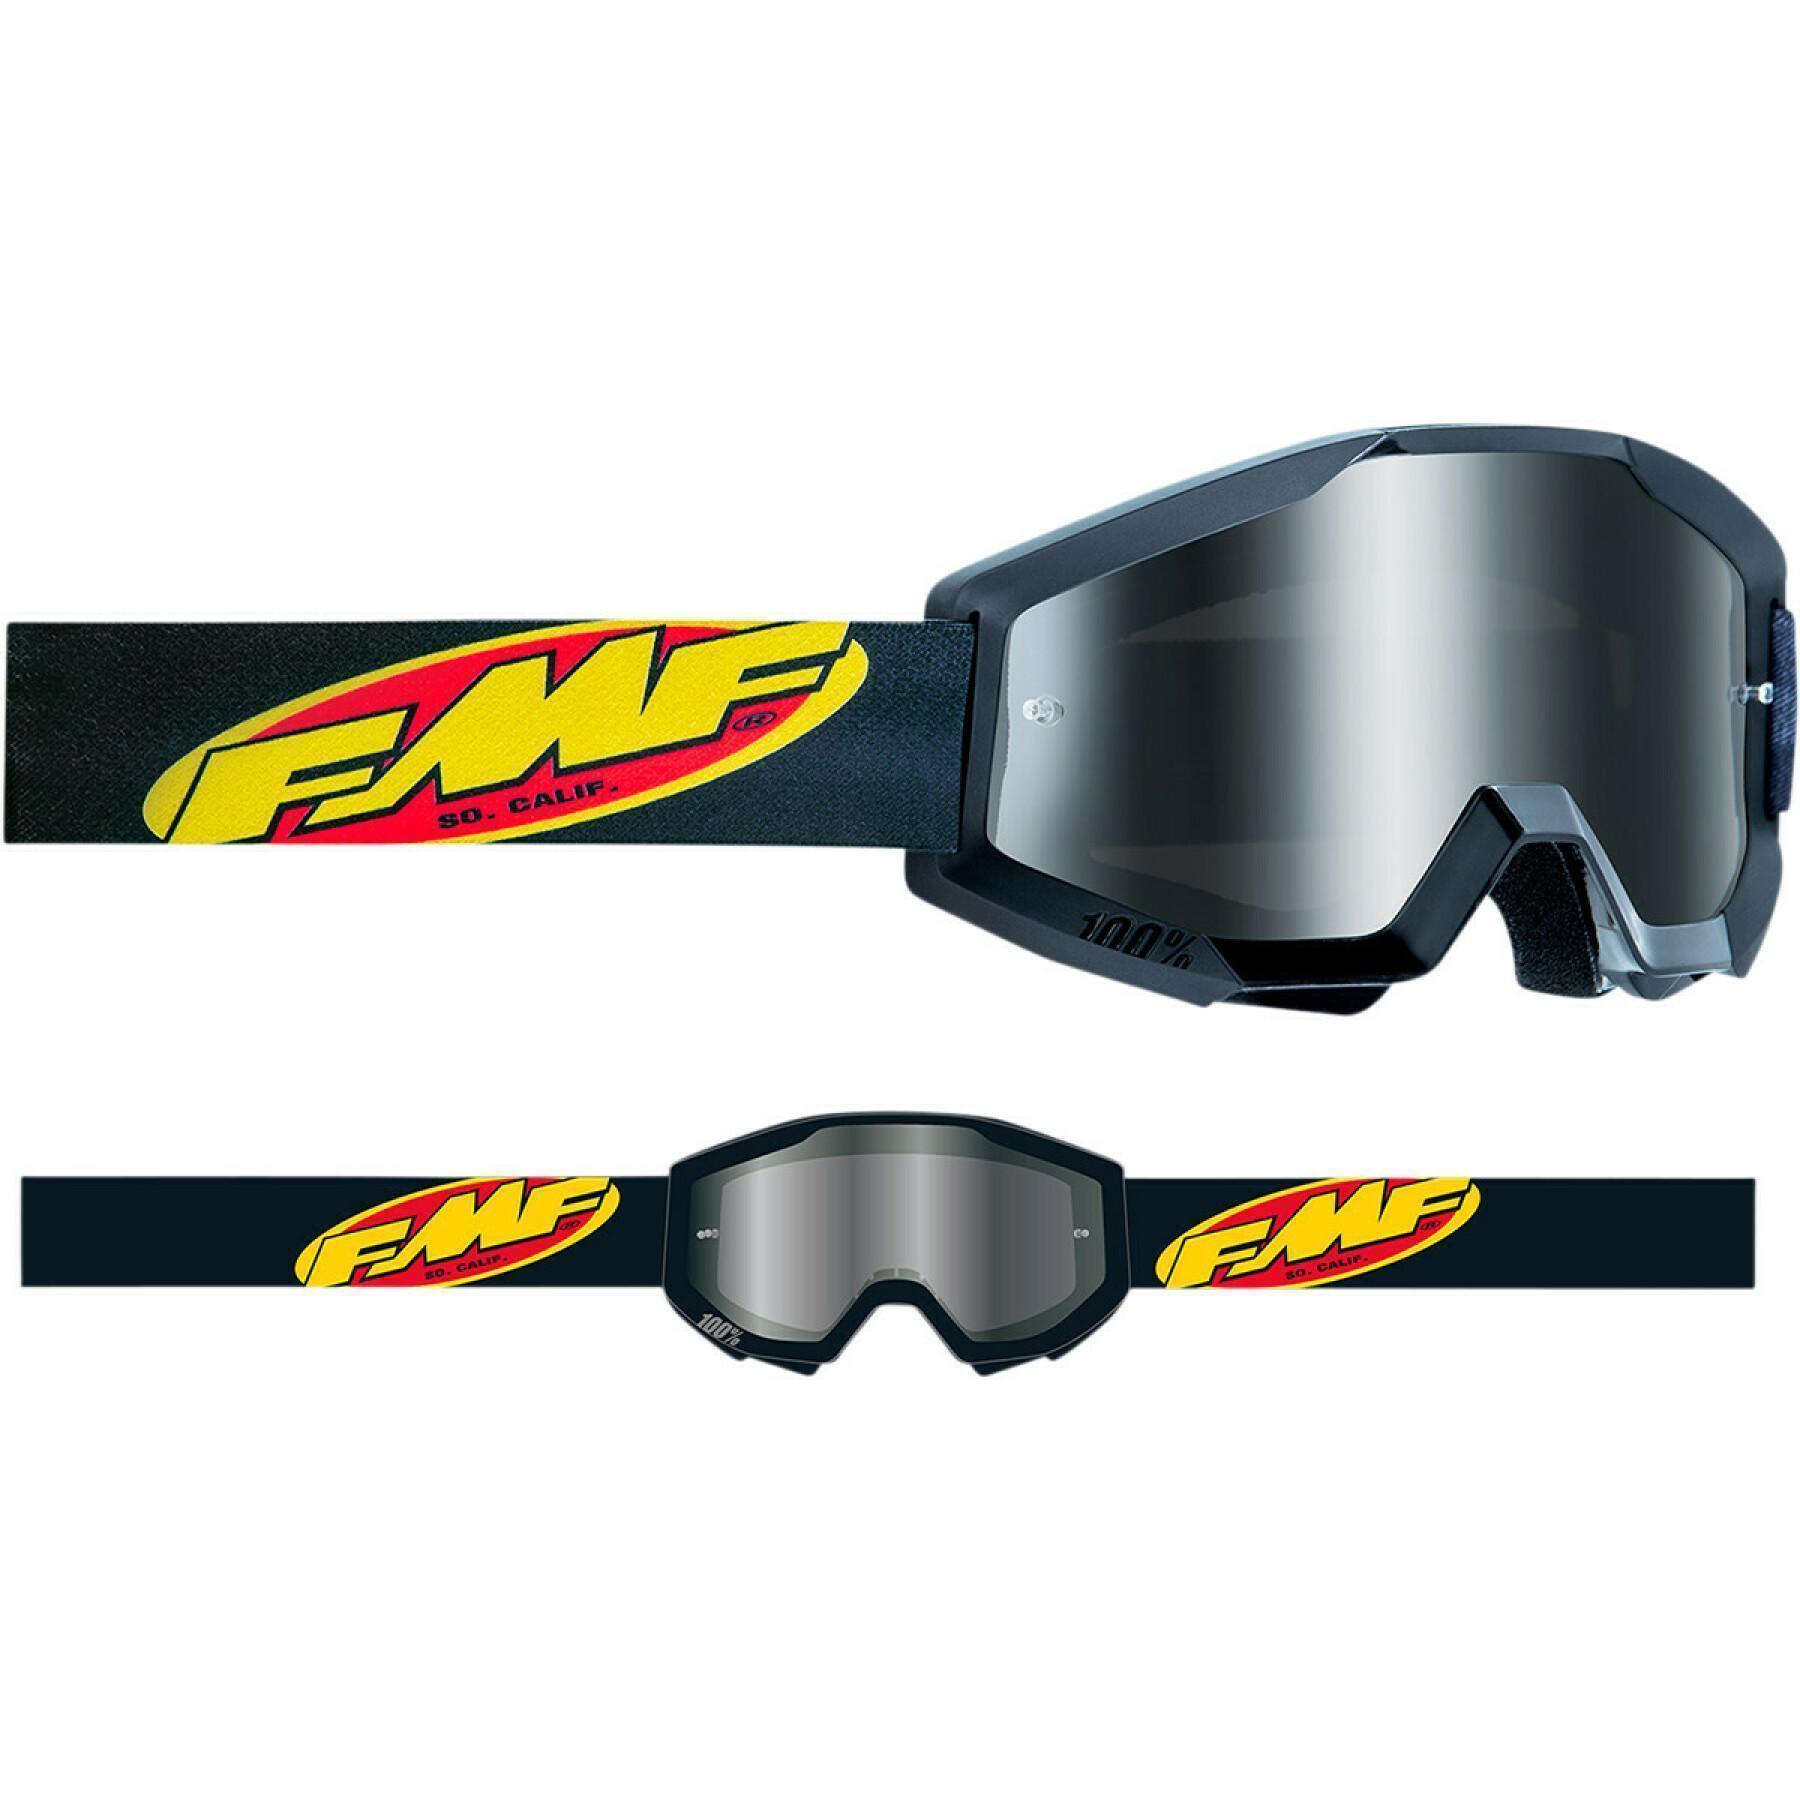 Kinder-Motorrad-Crossbrille FMF Vision core